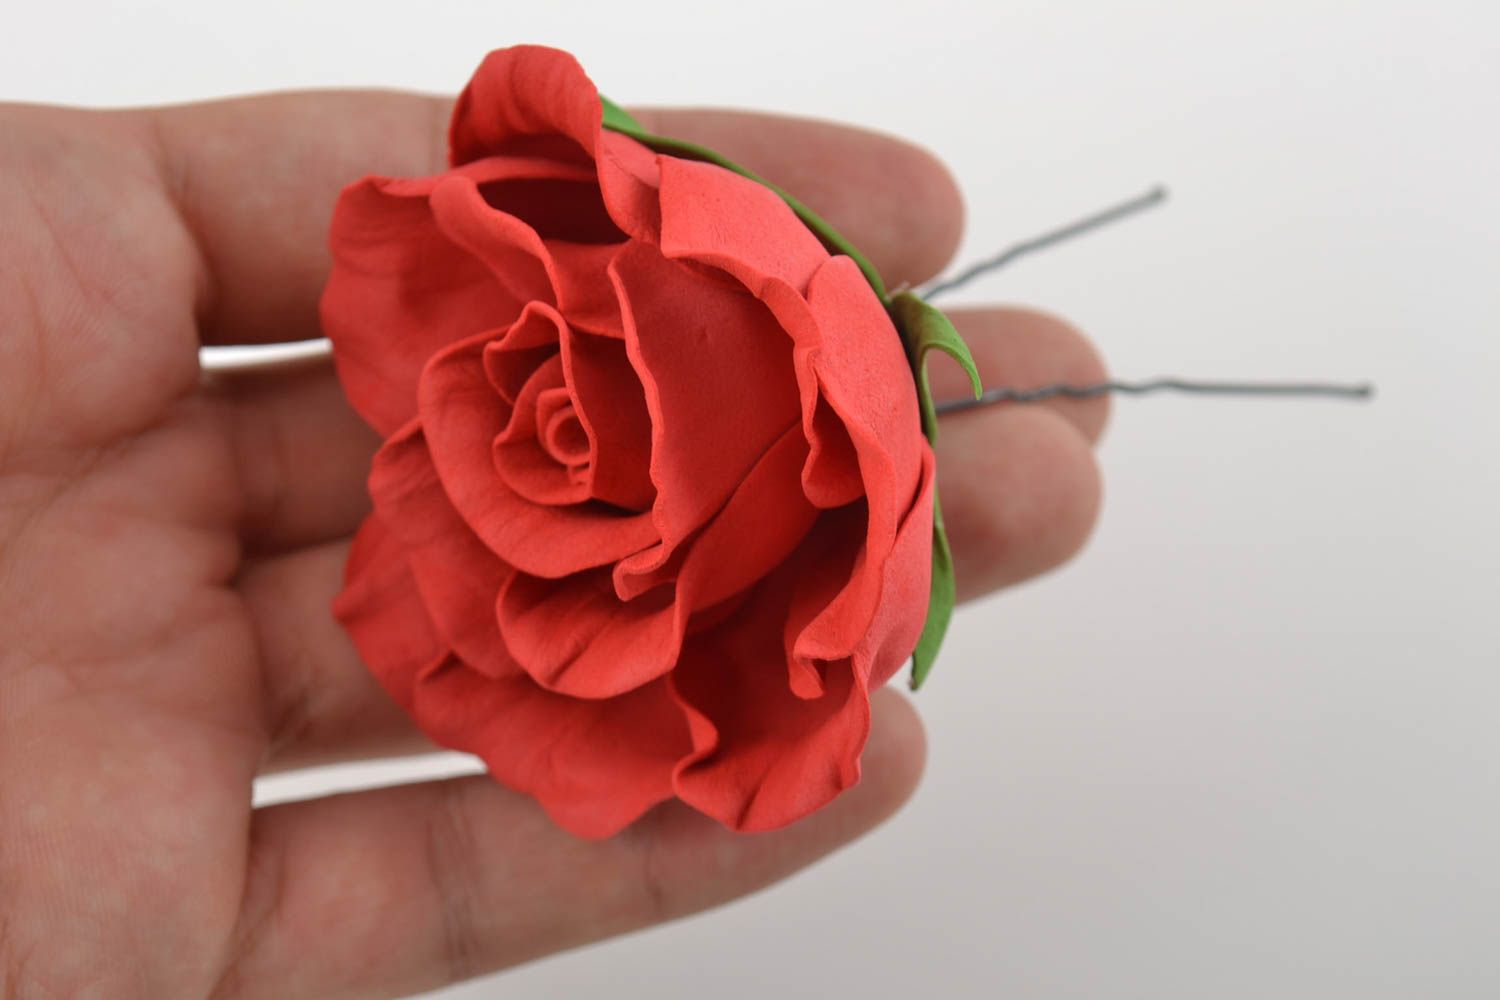 Шпилька из фоамирана с крупным цветком розы красная нарядная красивая хэнд мейд фото 9